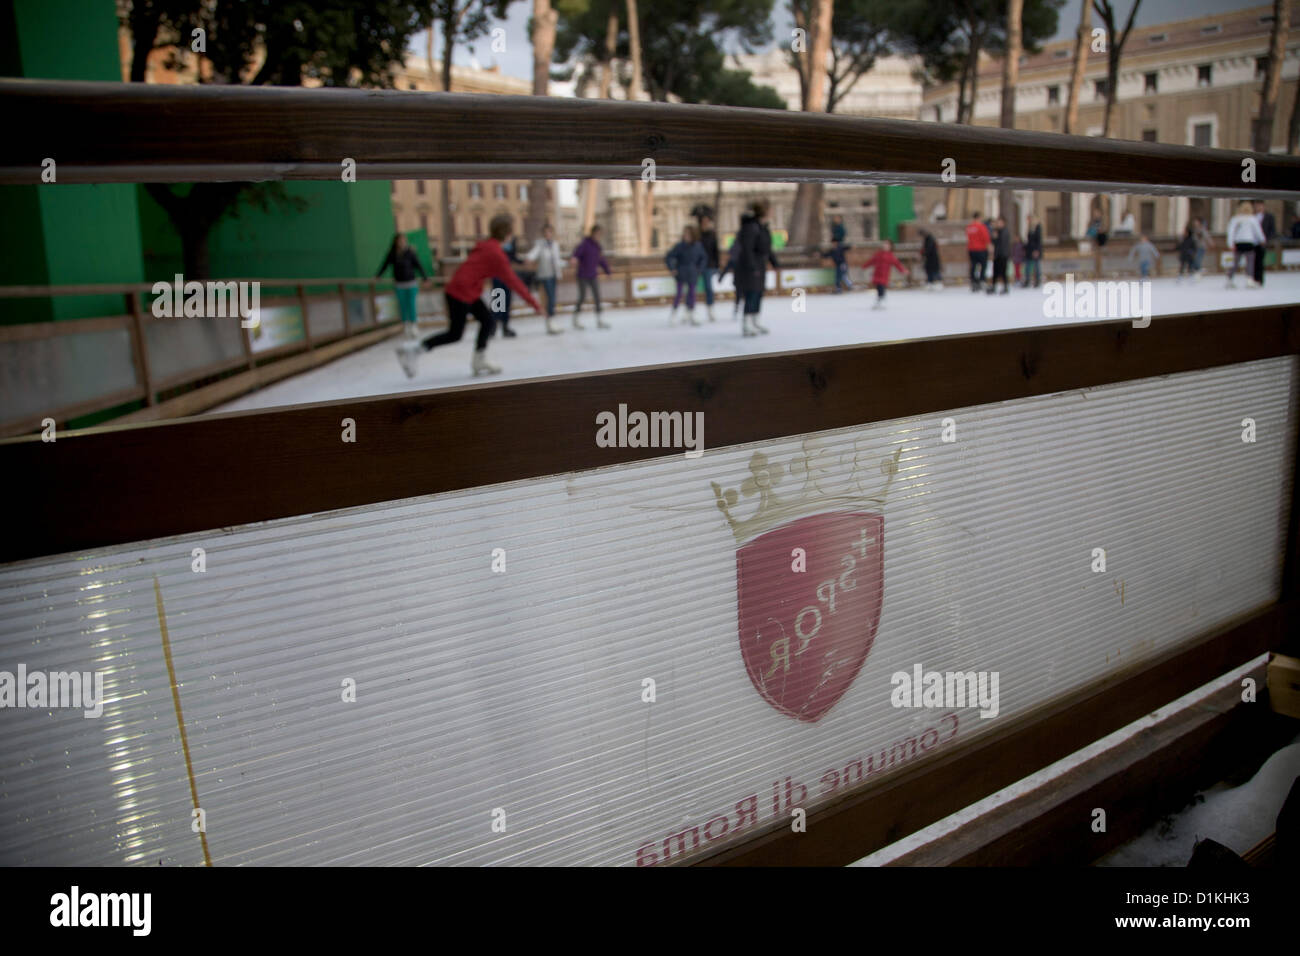 27 décembre 2012, Rome, Italie. Le gouvernement municipal de Rome met en place et patinoire pour période de Noël au coeur de Rome Banque D'Images